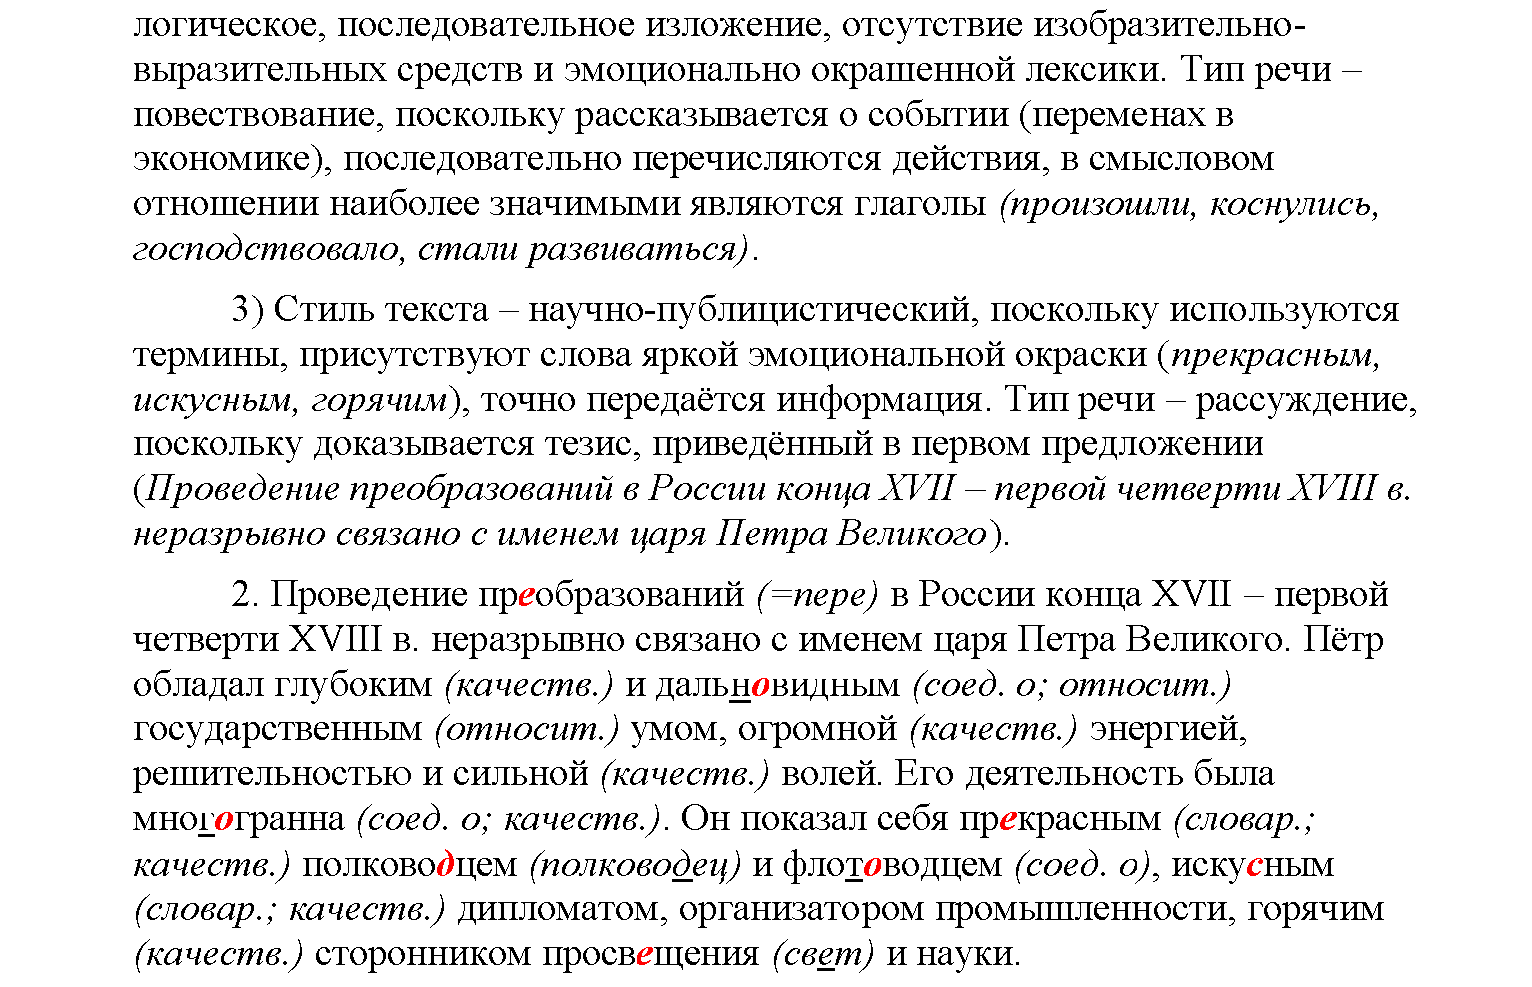 Страница 32, Дополнителые вопросы 6 класс Рыбченкова